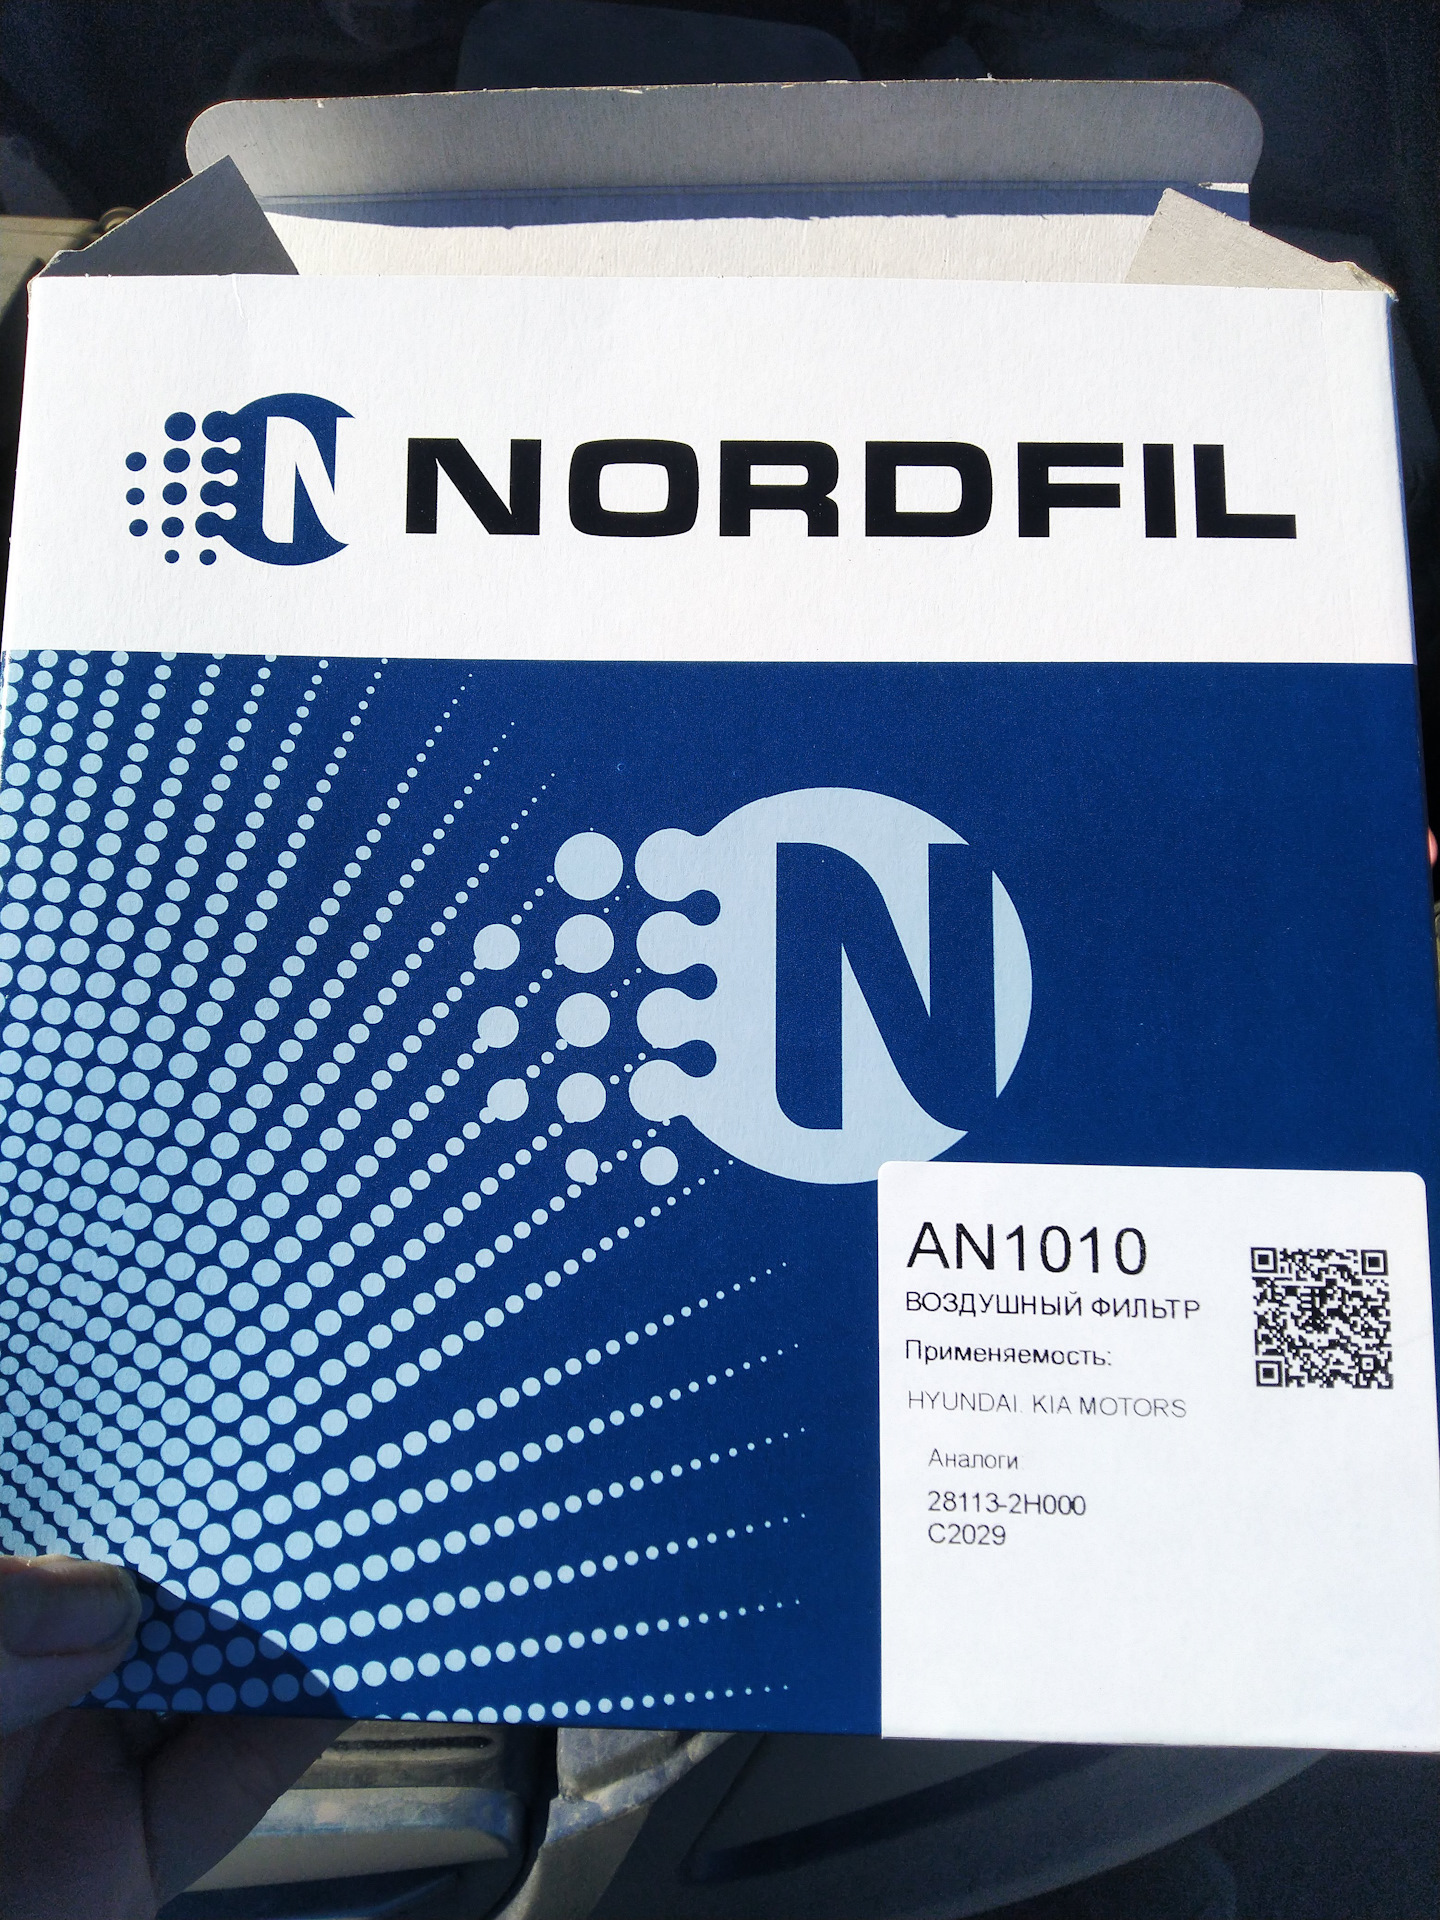 Воздушный фильтр nordfil. An1010 NORDFIL. 1010. NORDFIL фильтры. An1010 фильтр воздушный.